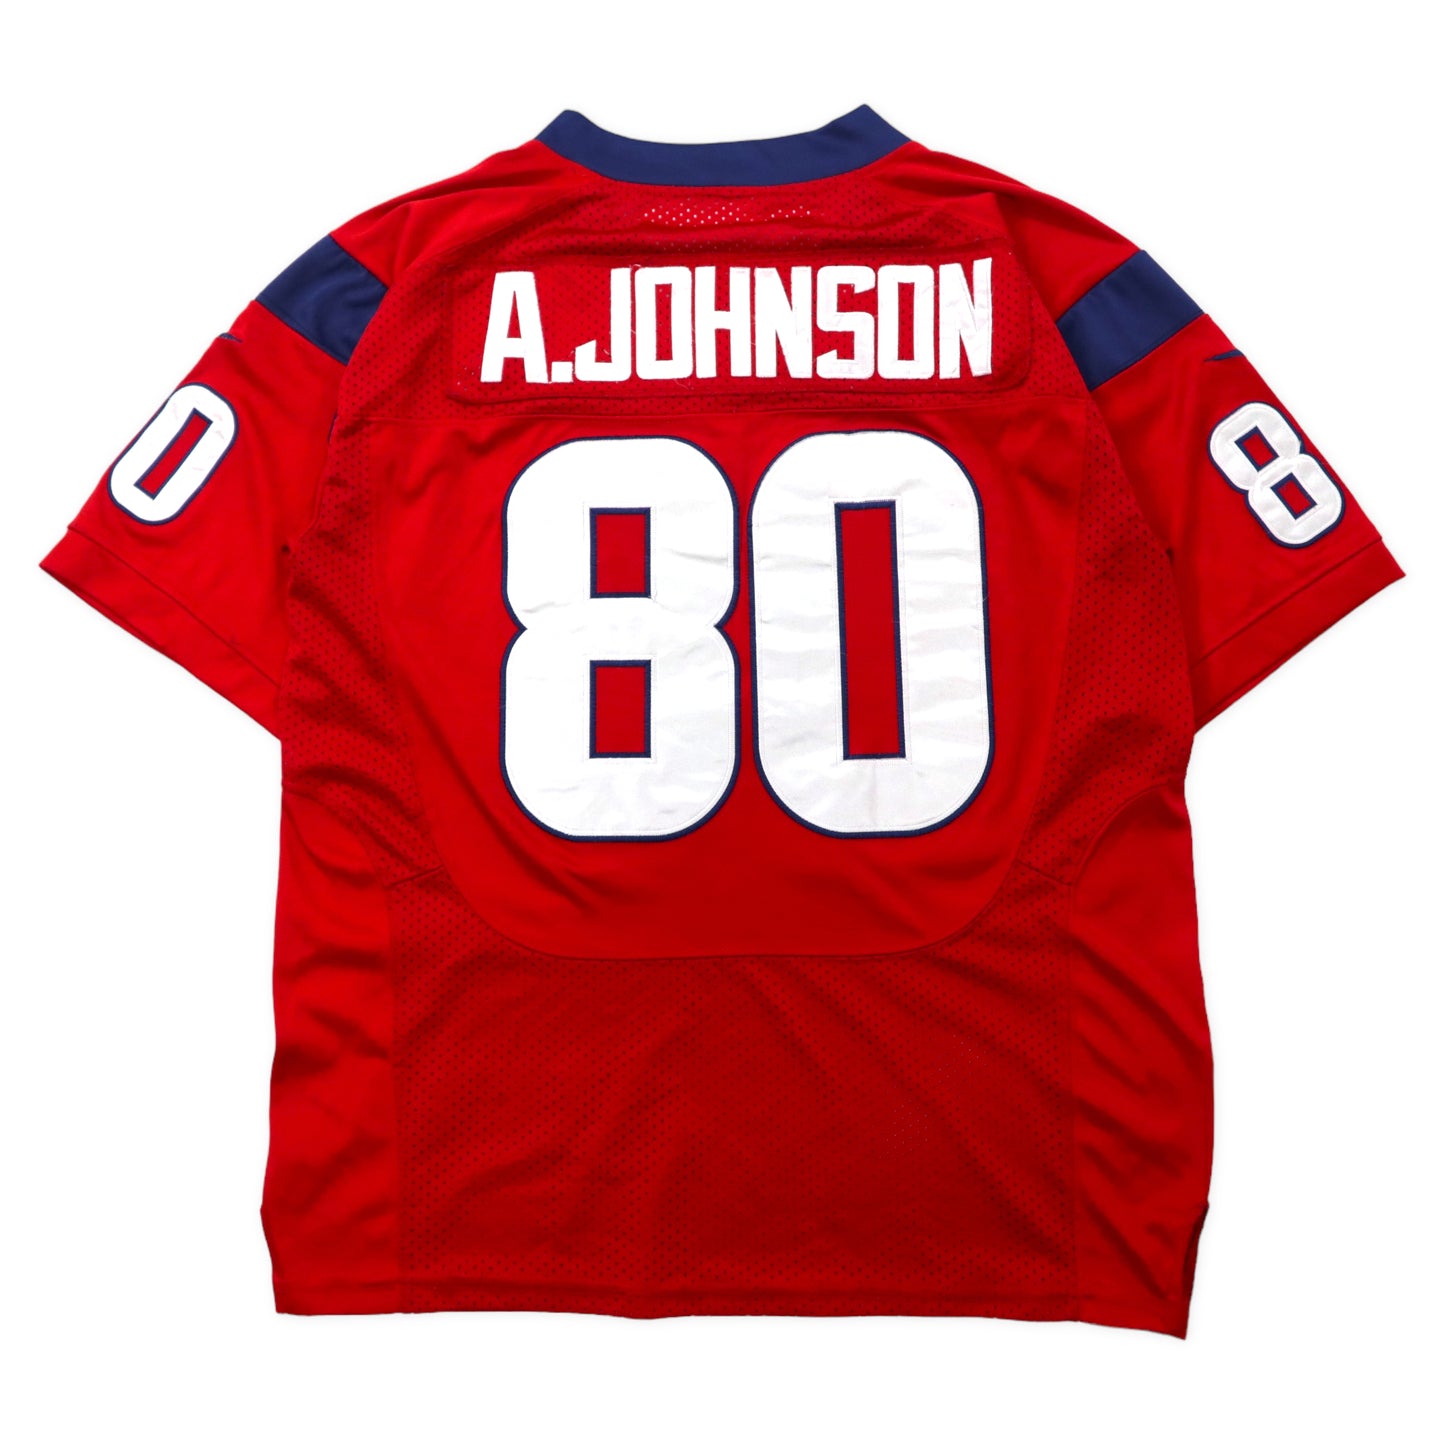 NIKE NFL ビッグサイズ ゲームシャツ 40 レッド ポリエステル メッシュ TEXANS ナンバリング A.JOHNSON